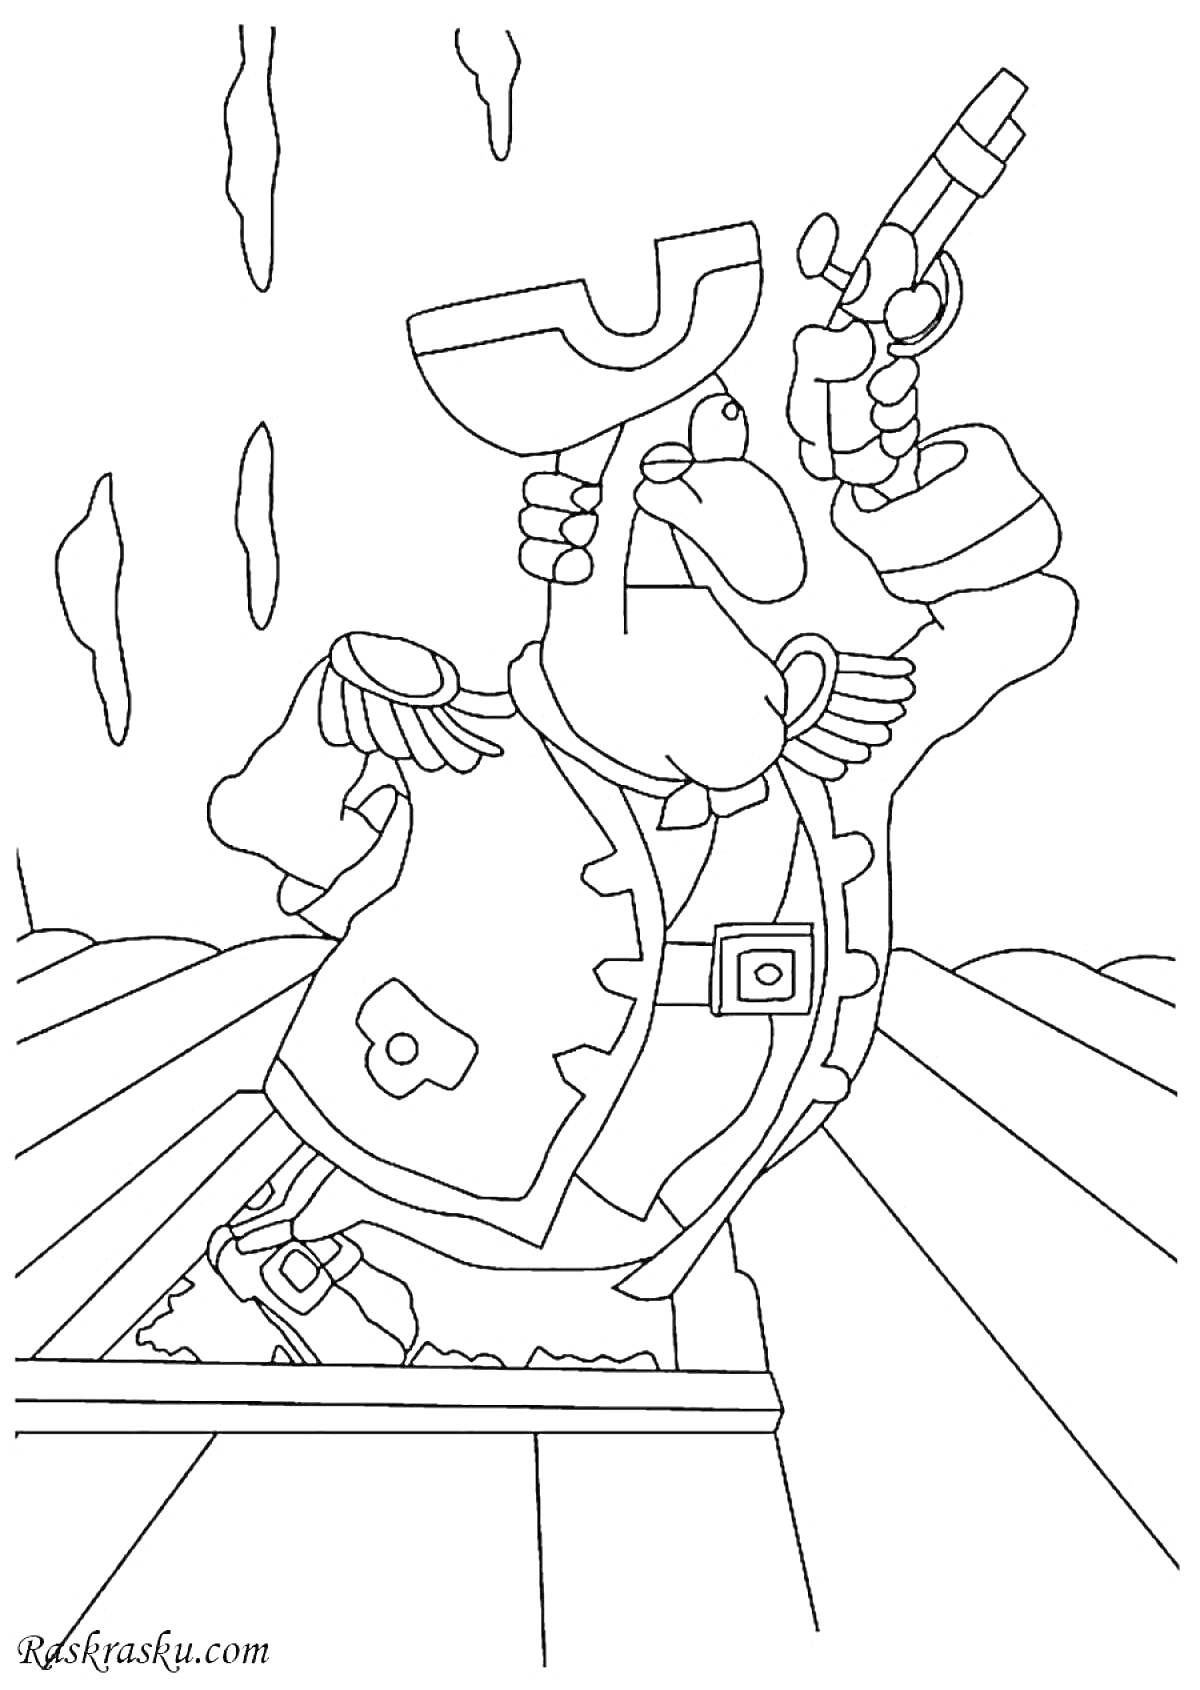 Раскраска Доктор Ливси с мушкетом на палубе корабля, со шпагой в ножнах и поднятой вверх рукой.